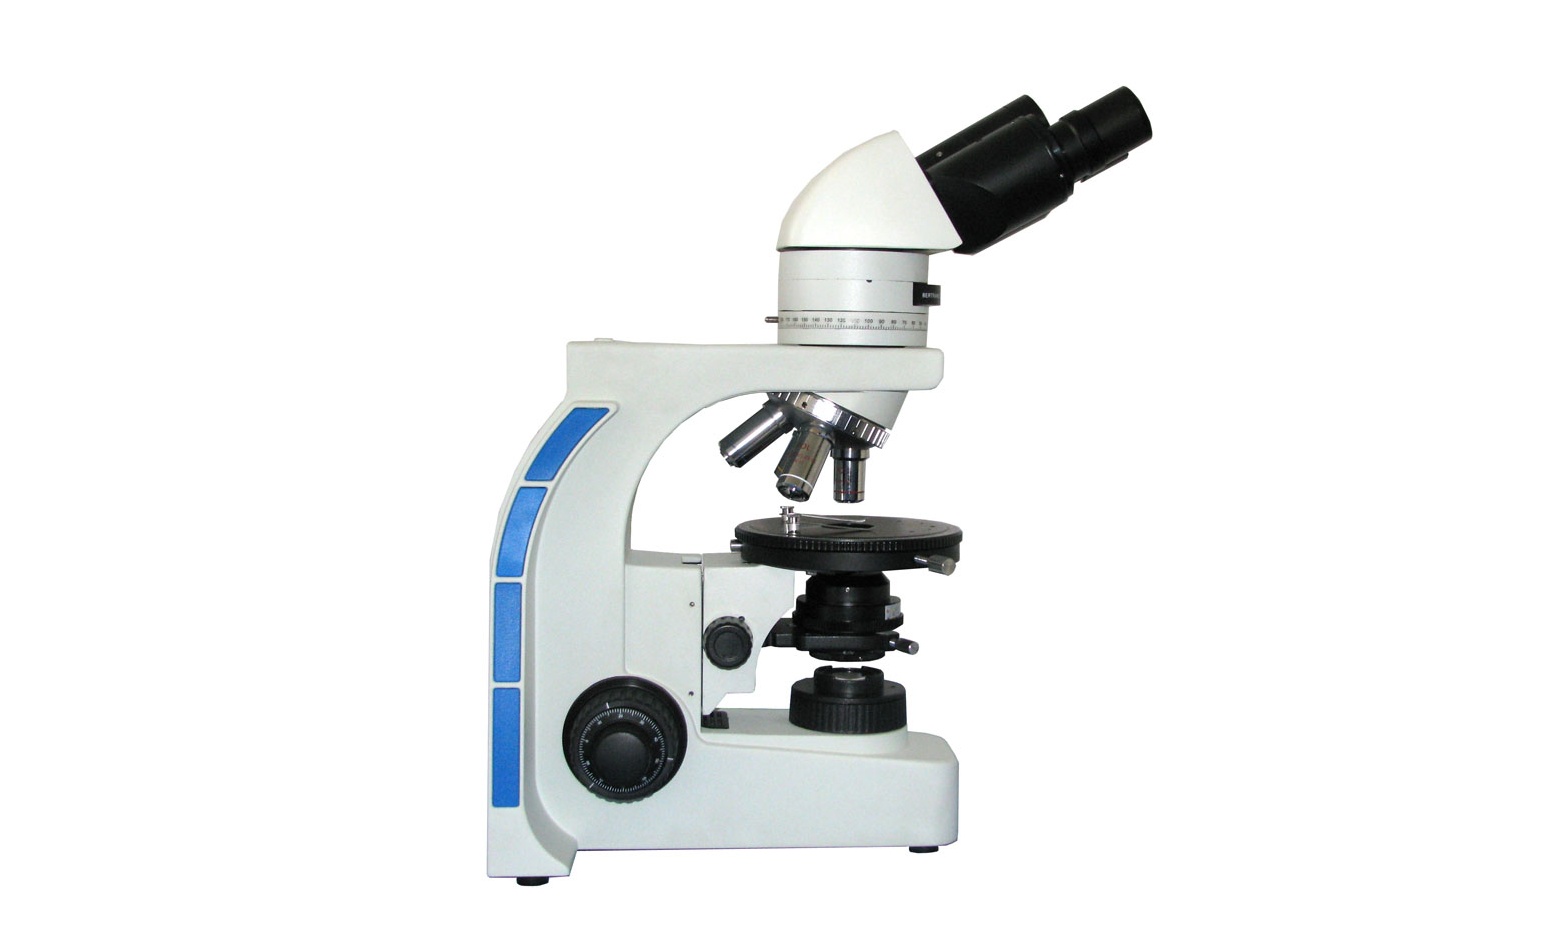 北京工商大学偏光显微镜等仪器设备采购项目中标公告